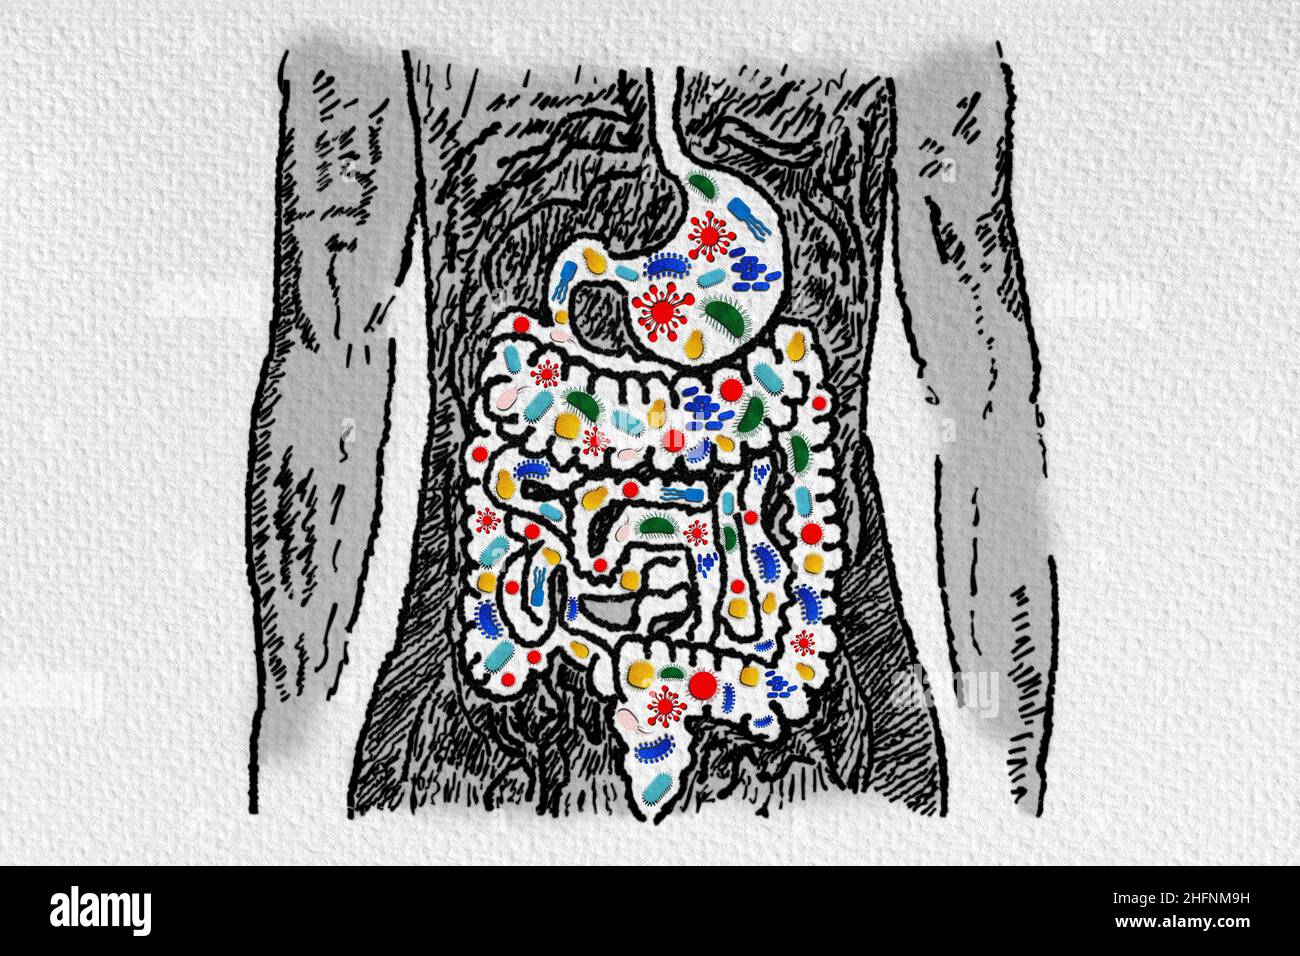 Darmmikrobiom und Probiotika - Assoziation mit gastrointestinalen Erkrankungen - Leaky gut - Dysbiose - kleines intestinales bakterielles Überwachstum - Conceptua Stockfoto